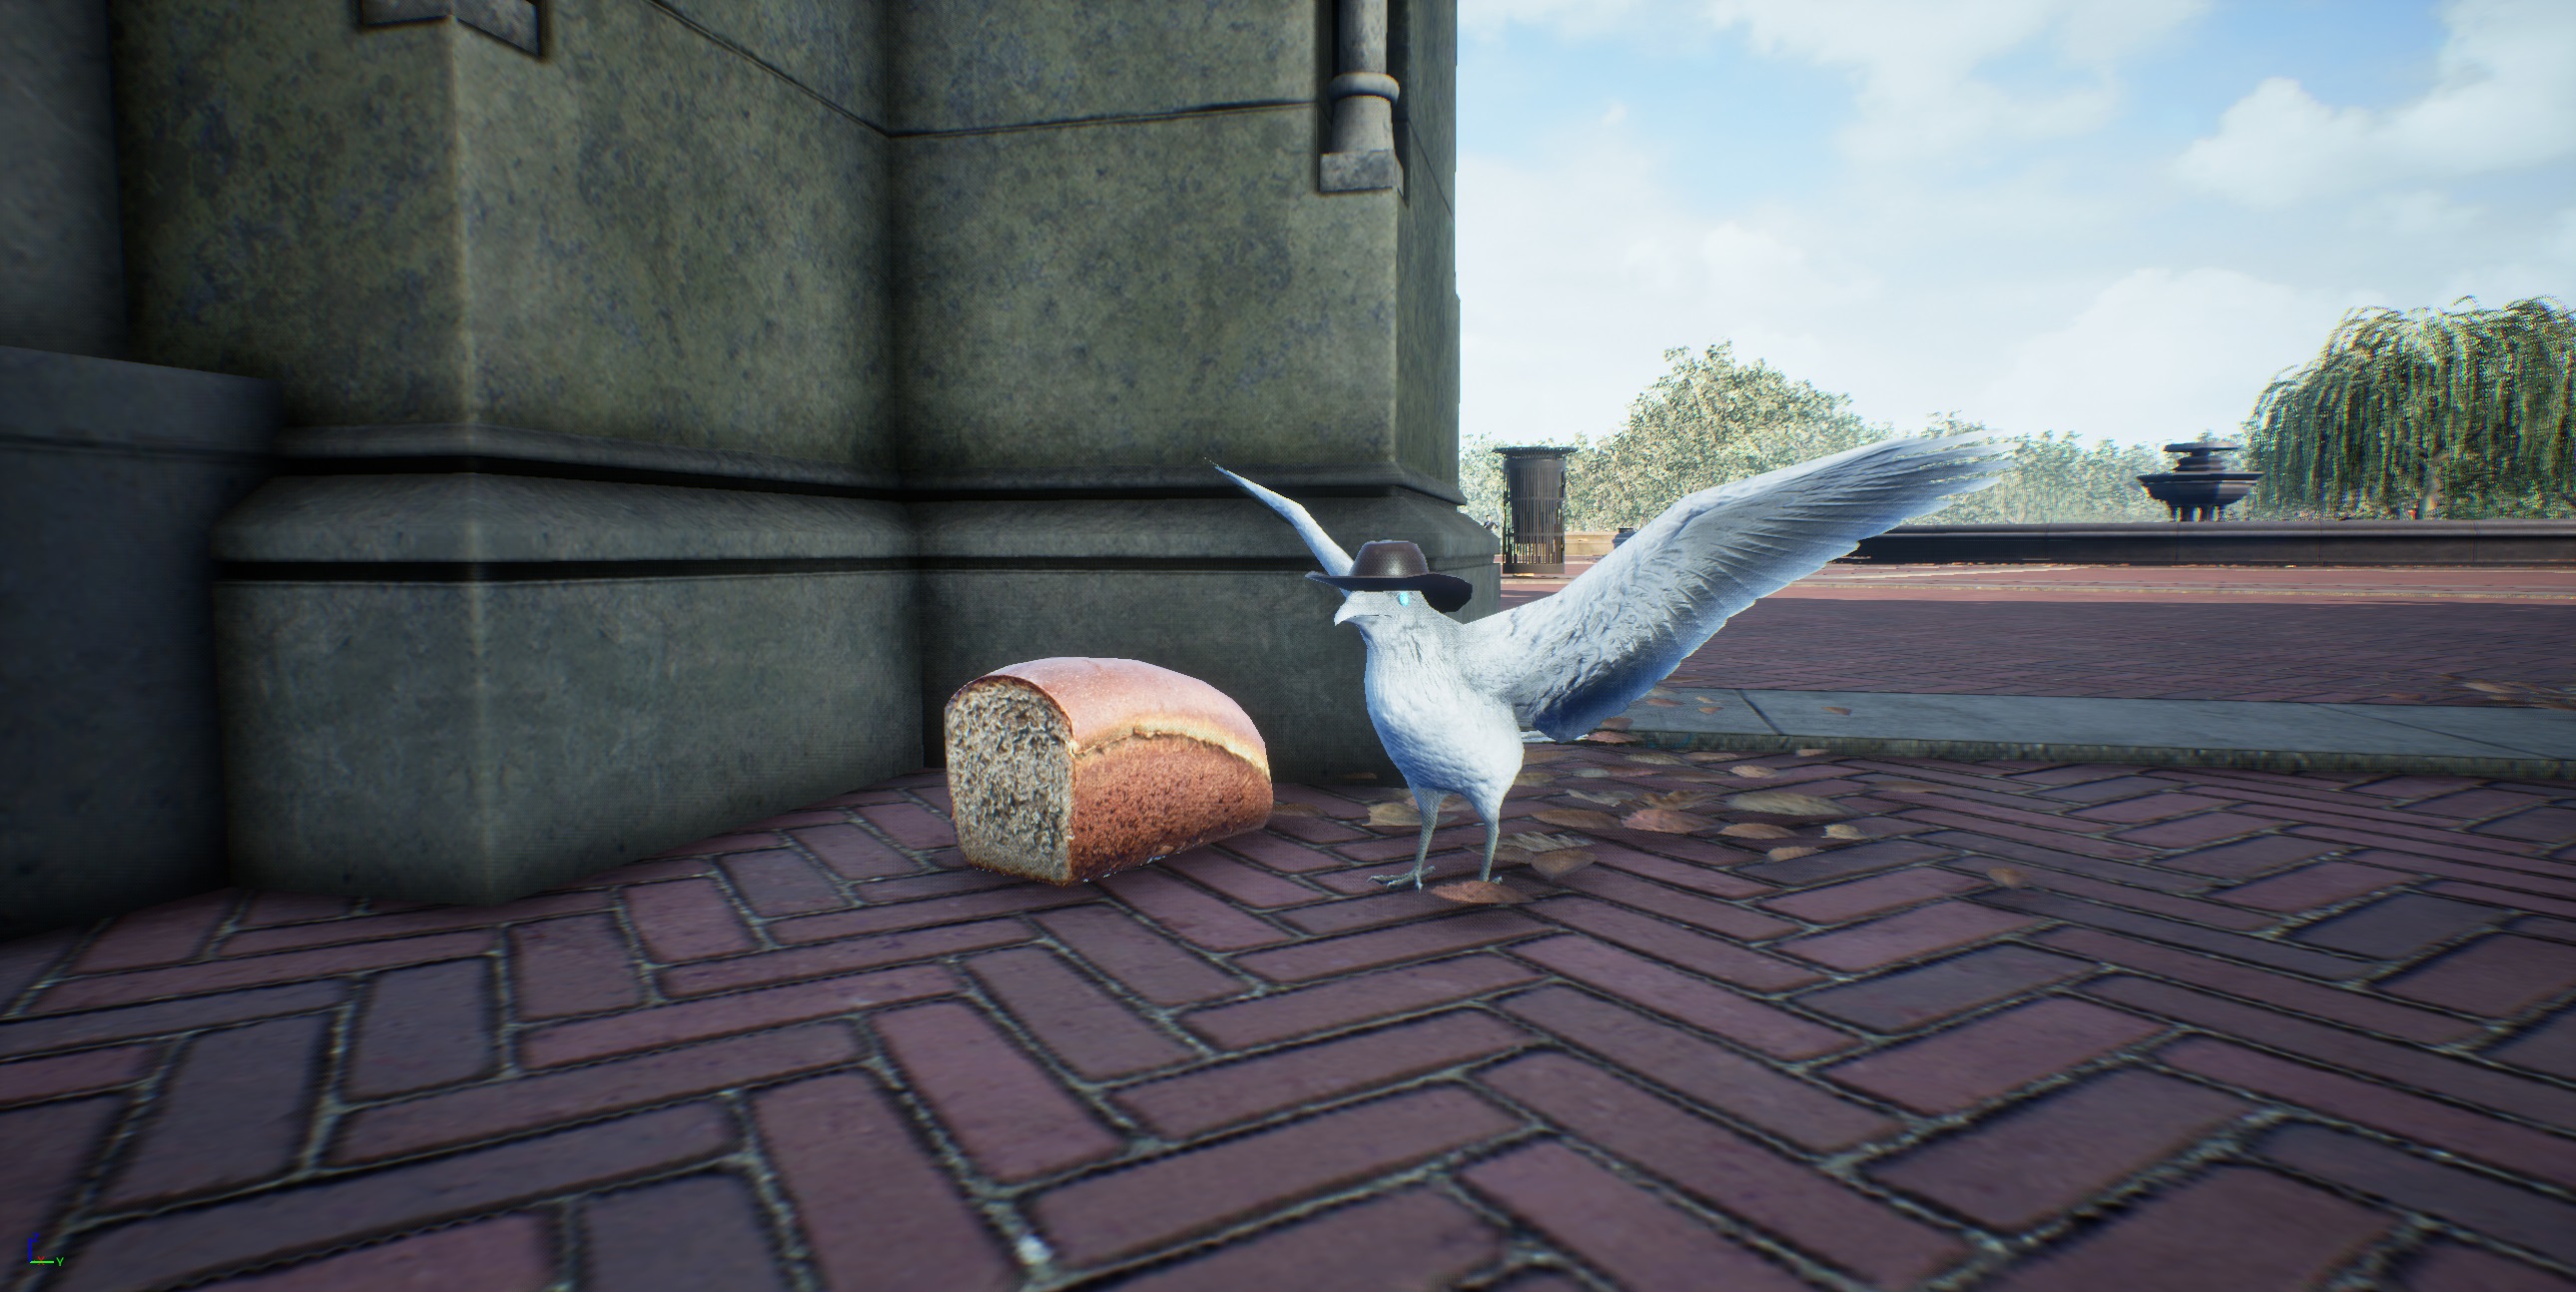 Pigeon Simulator on Steam